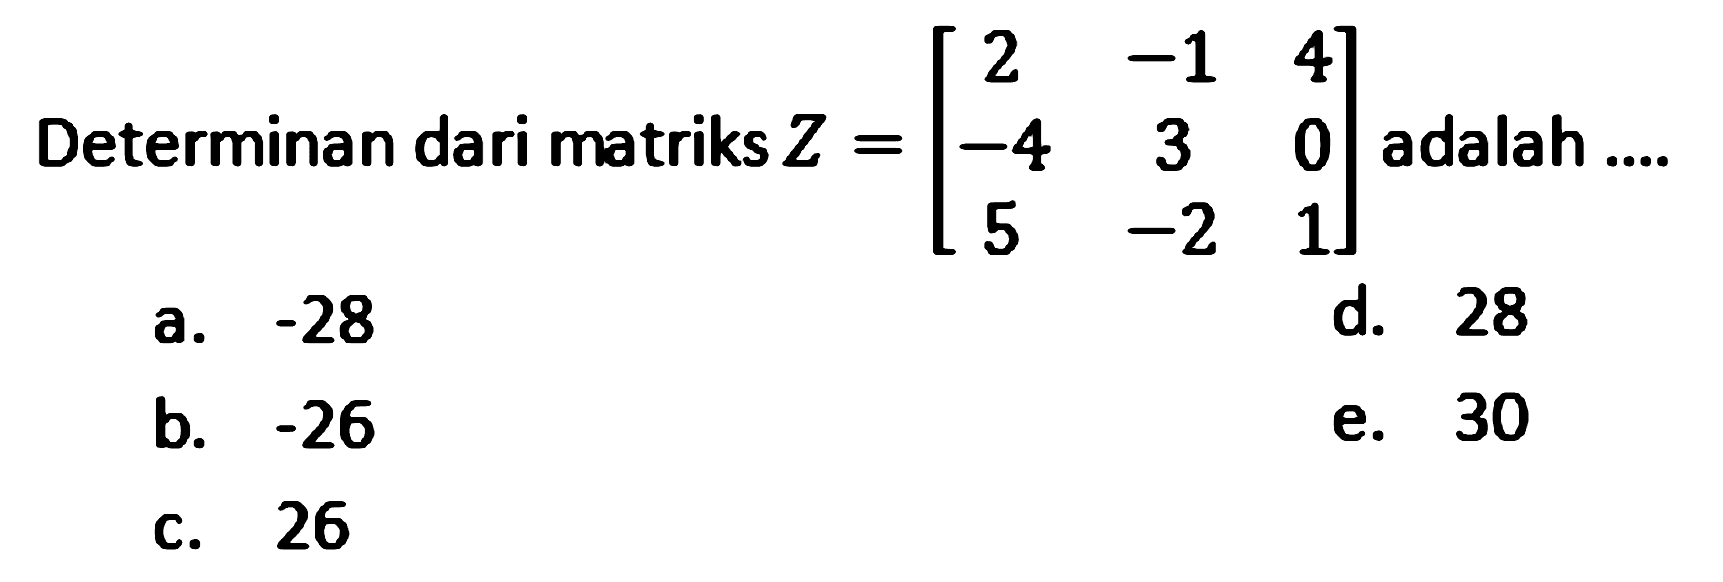 Determinan dari matriks  Z=[2  -1  4  -4  3  0  5  -2  1]  adalah ....
